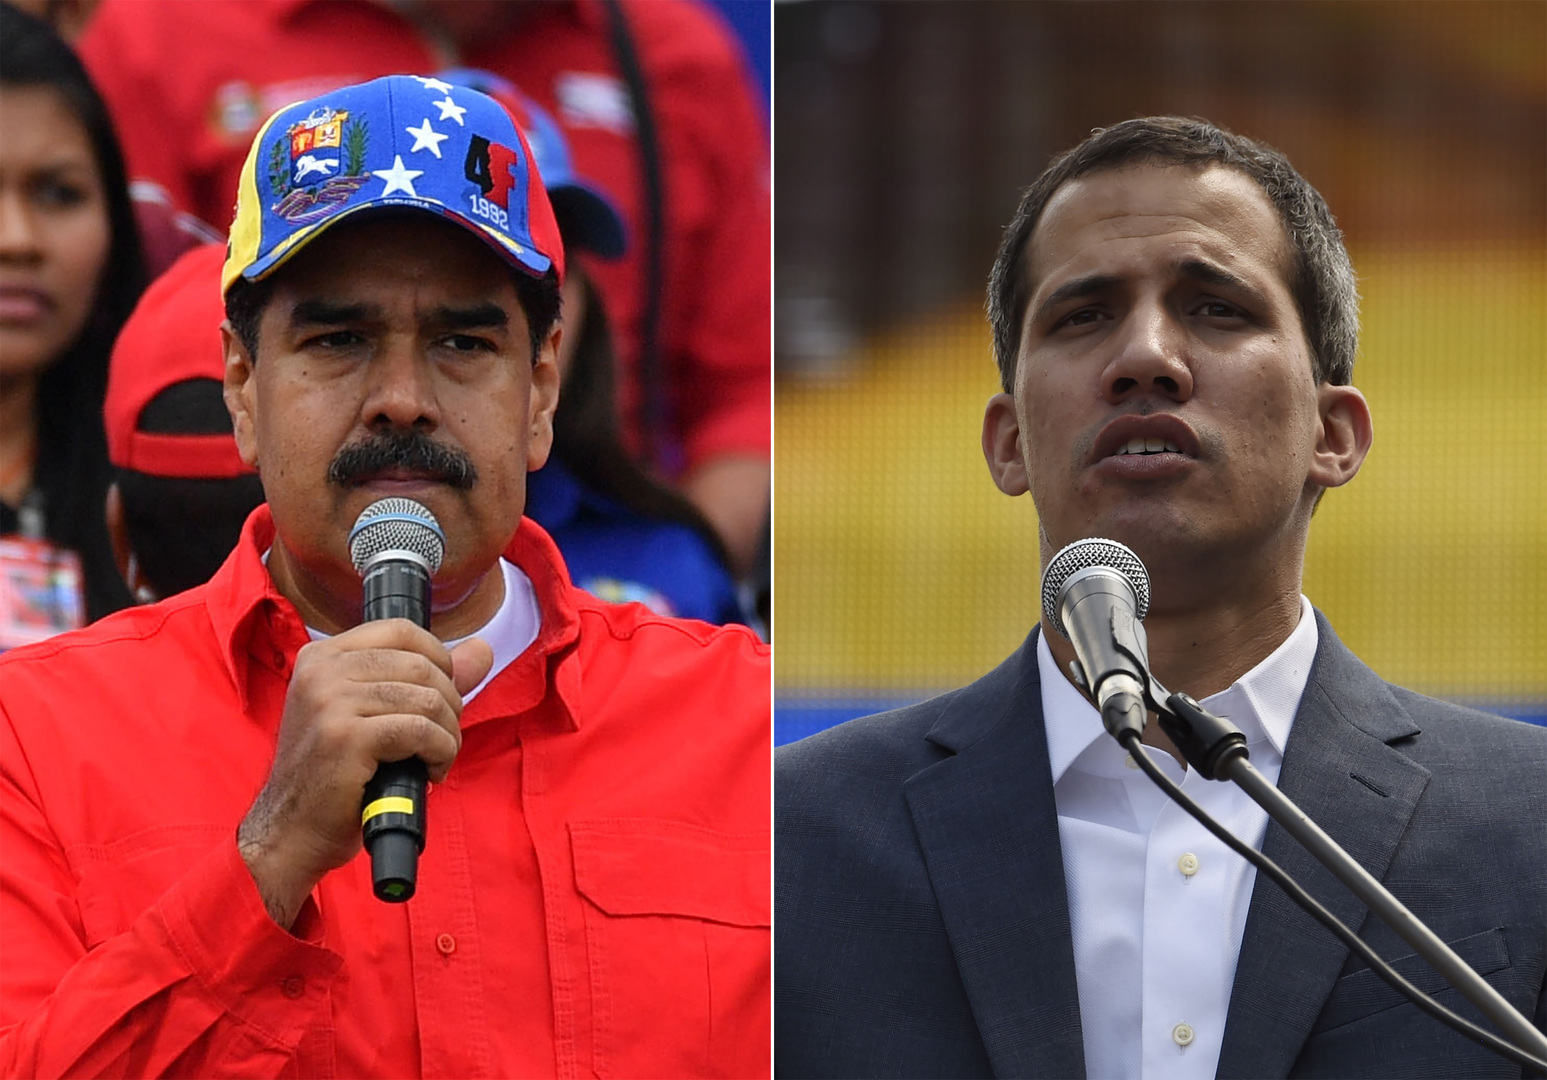 السلطات الفنزويلية والمعارضة تدعوان أنصارهما للتظاهر